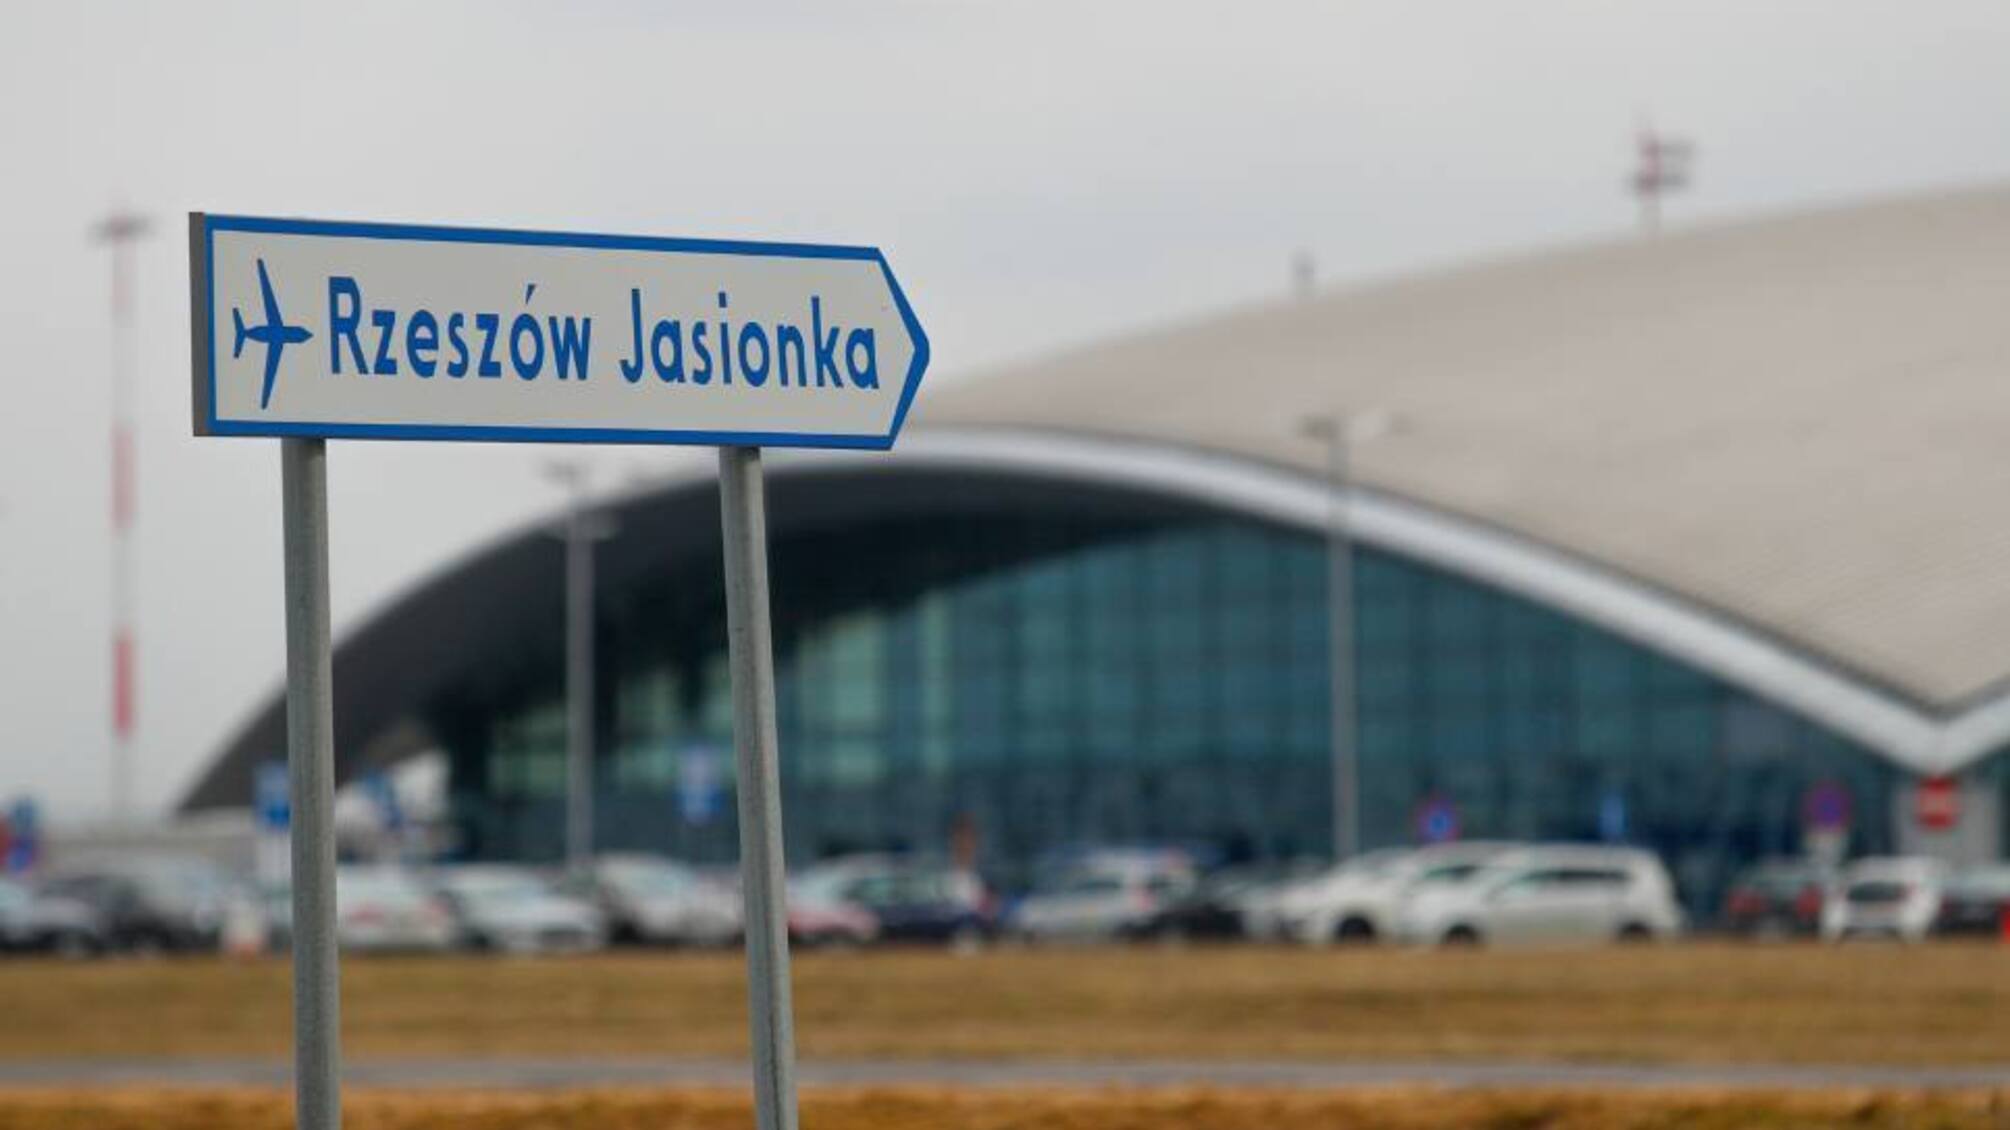 Шпионили за грузами для ВСУ: в аэропорту Жешува задержали российских агентов, – польские СМИ